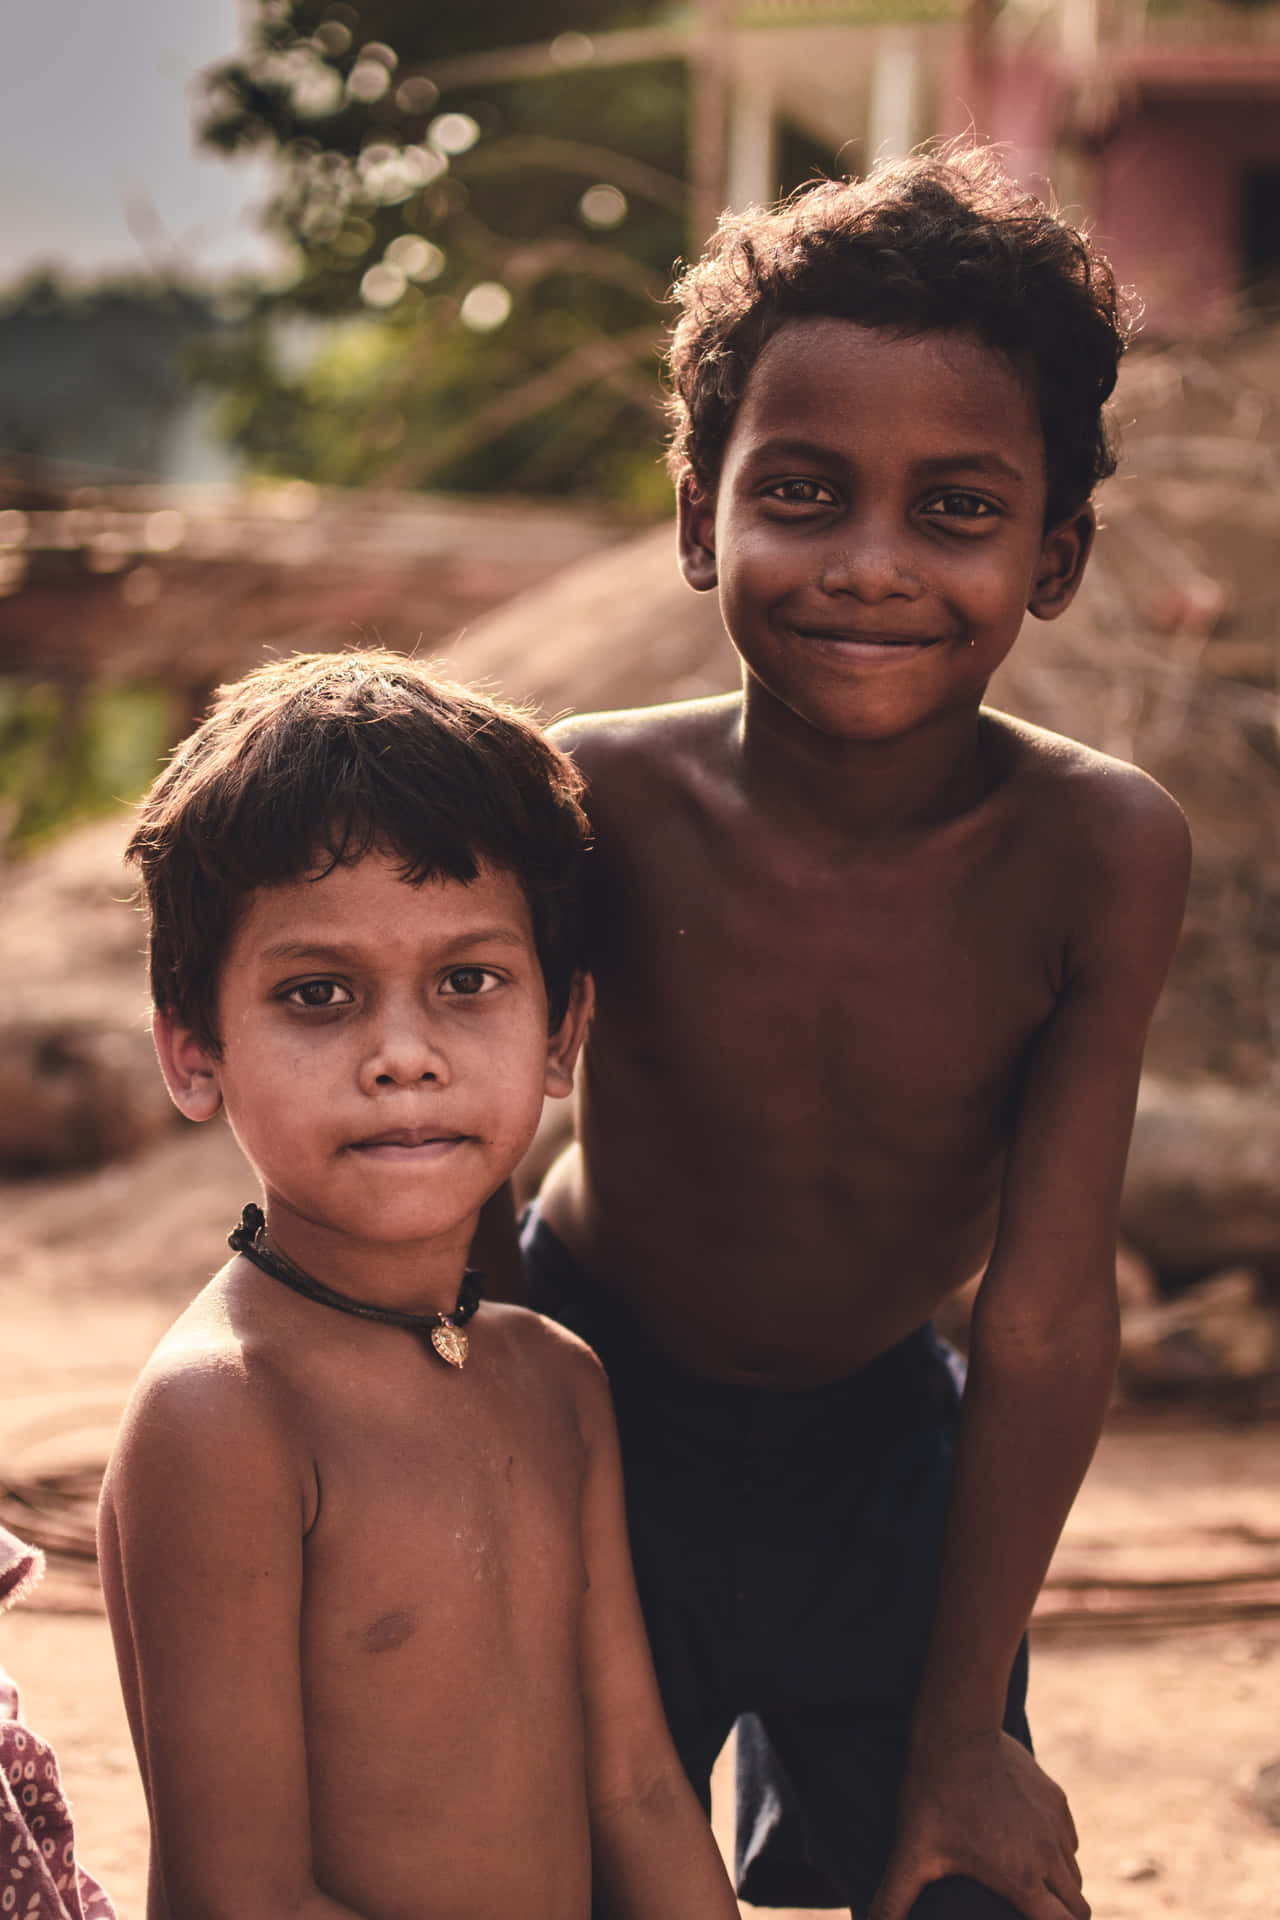 Naketfoto Av Två Unga Indiska Pojkar.